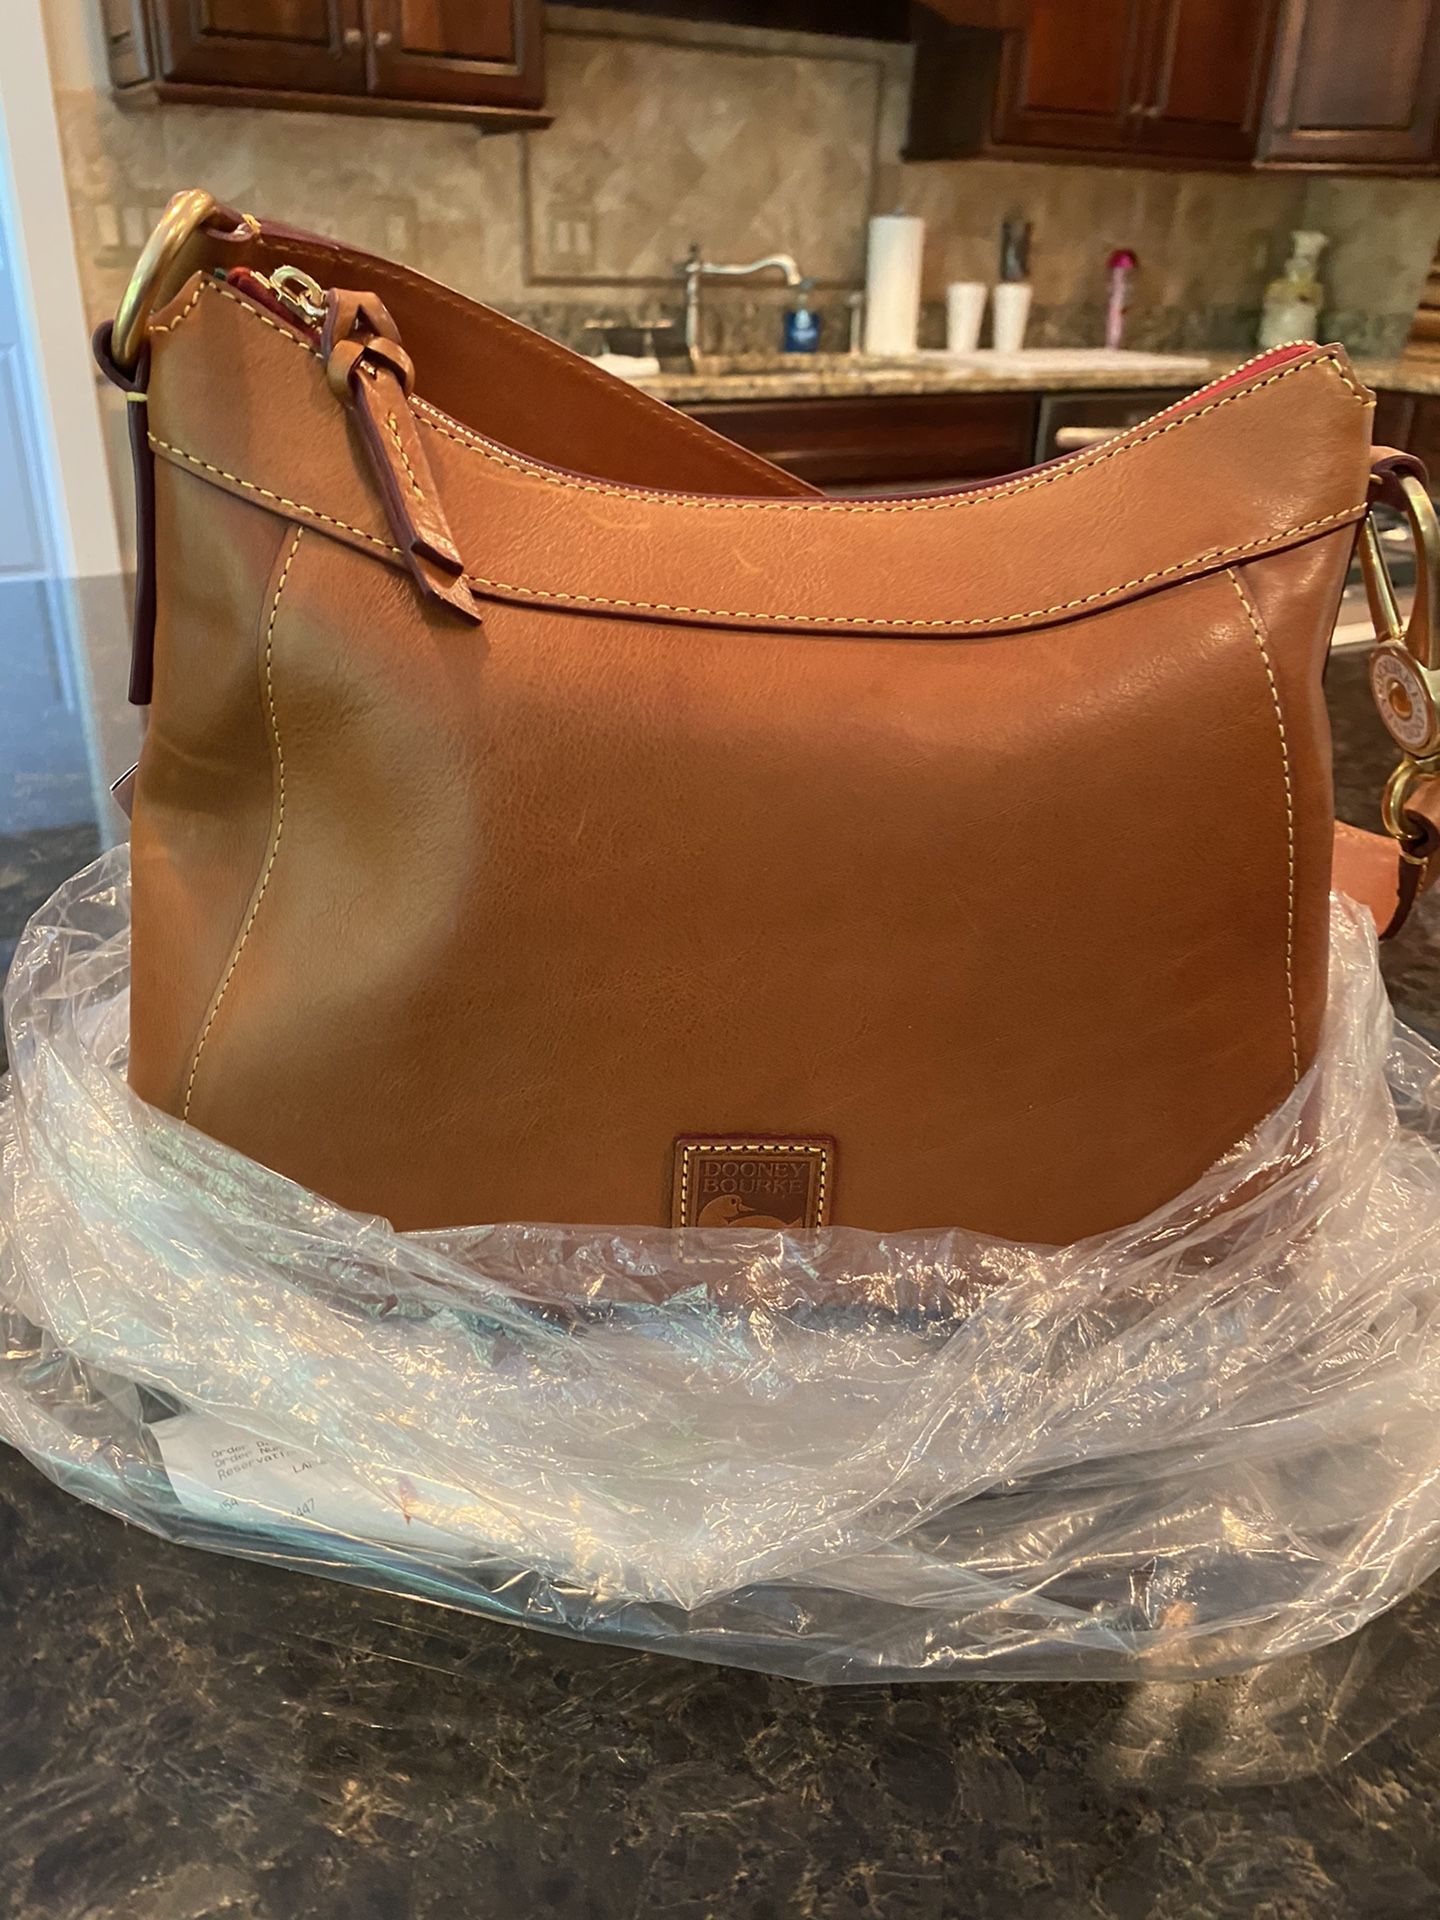 Dooney leather HOBO shoulder bag